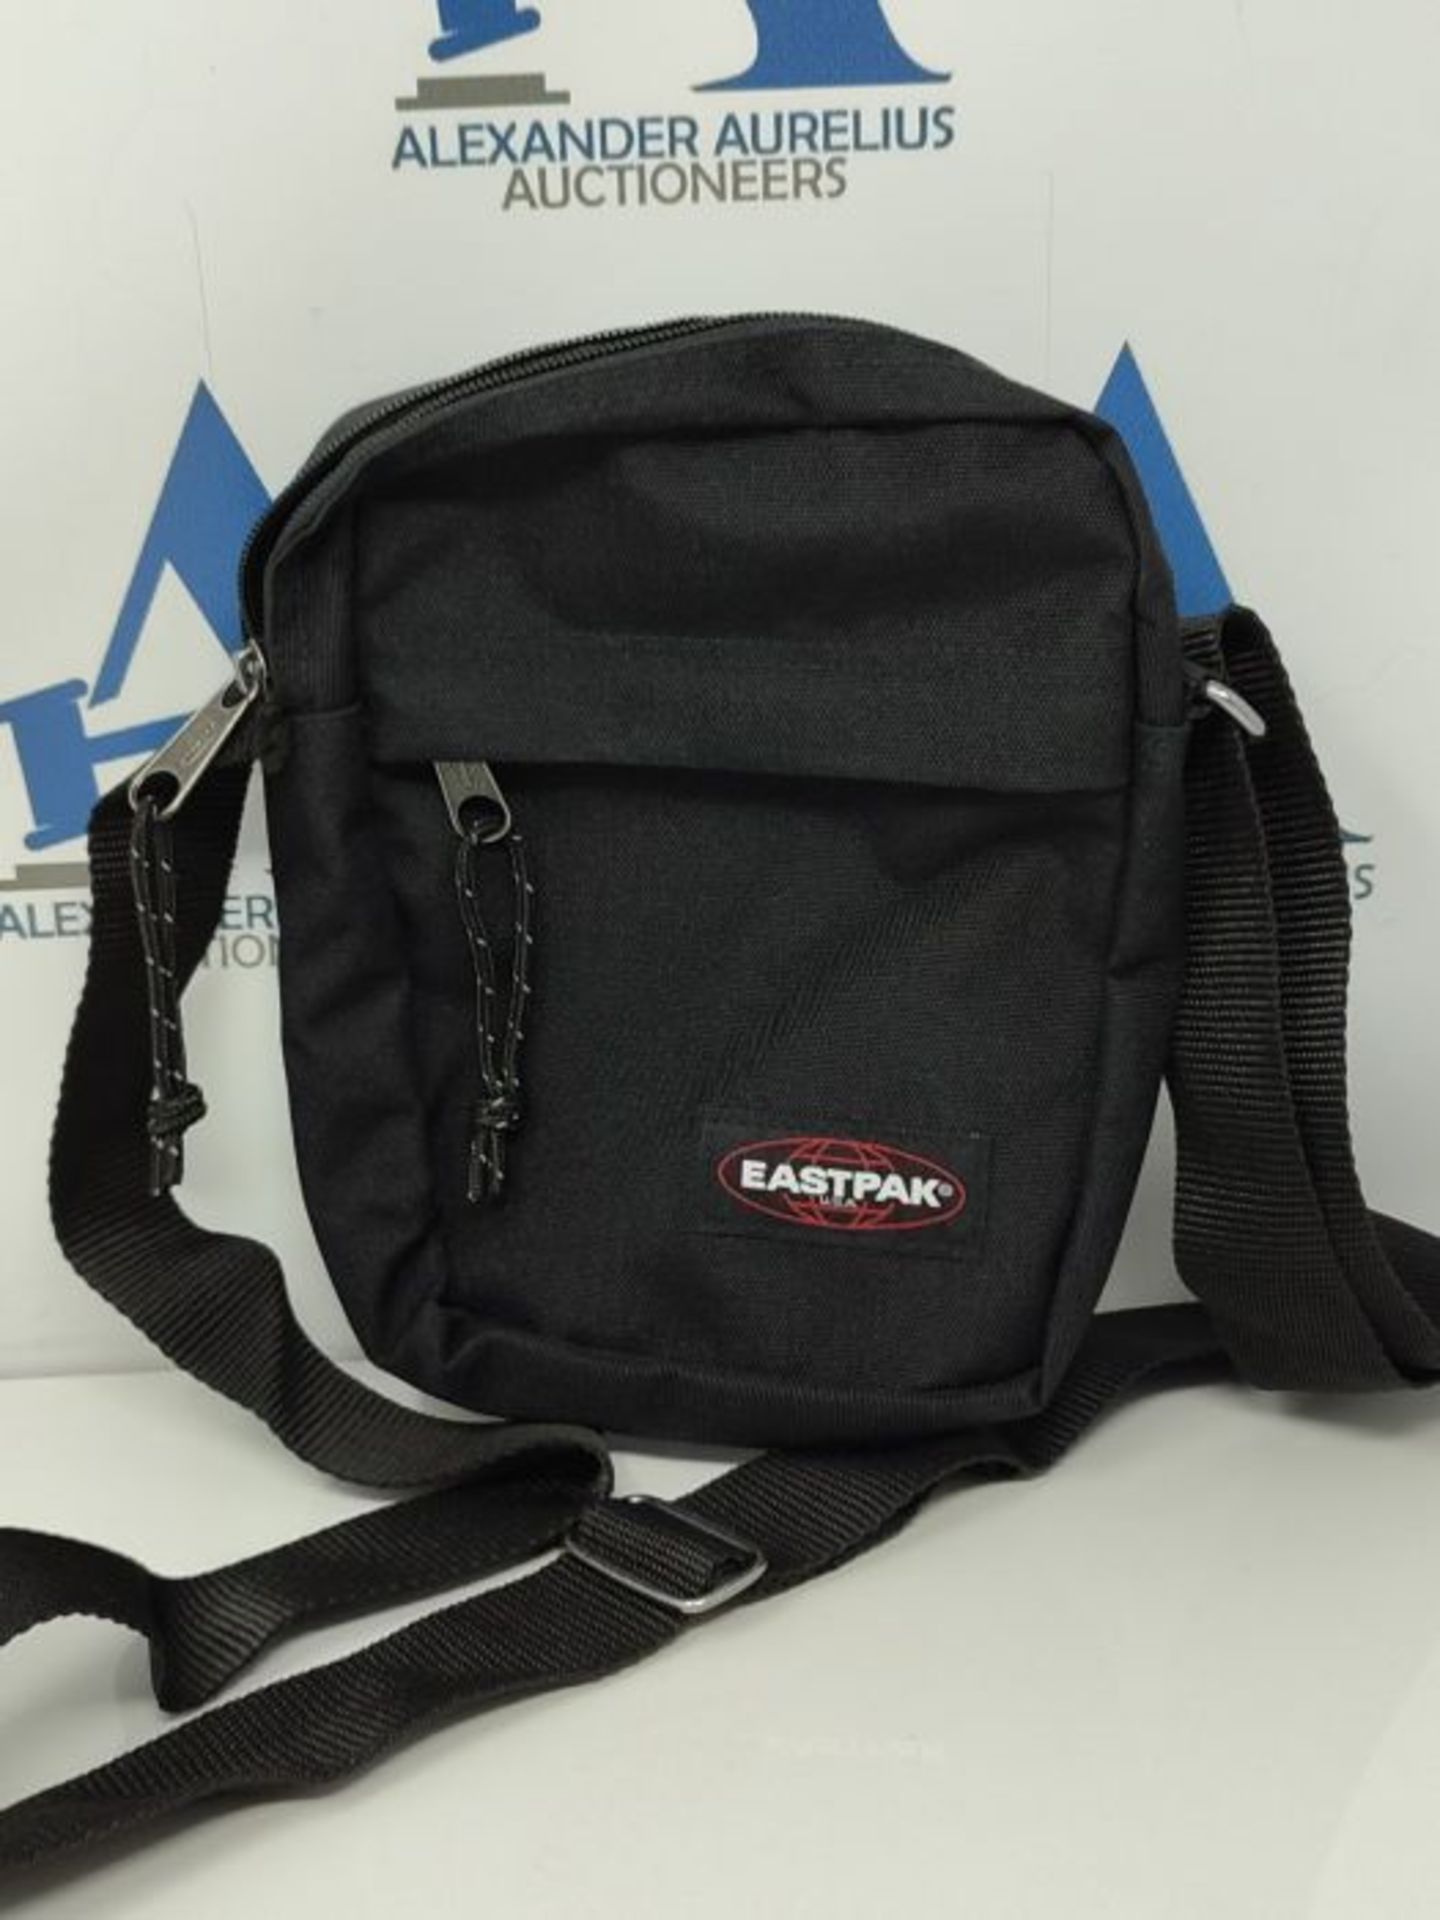 Eastpak The One Messenger Bag, 21 cm, 2.5 L, Black - Image 2 of 2